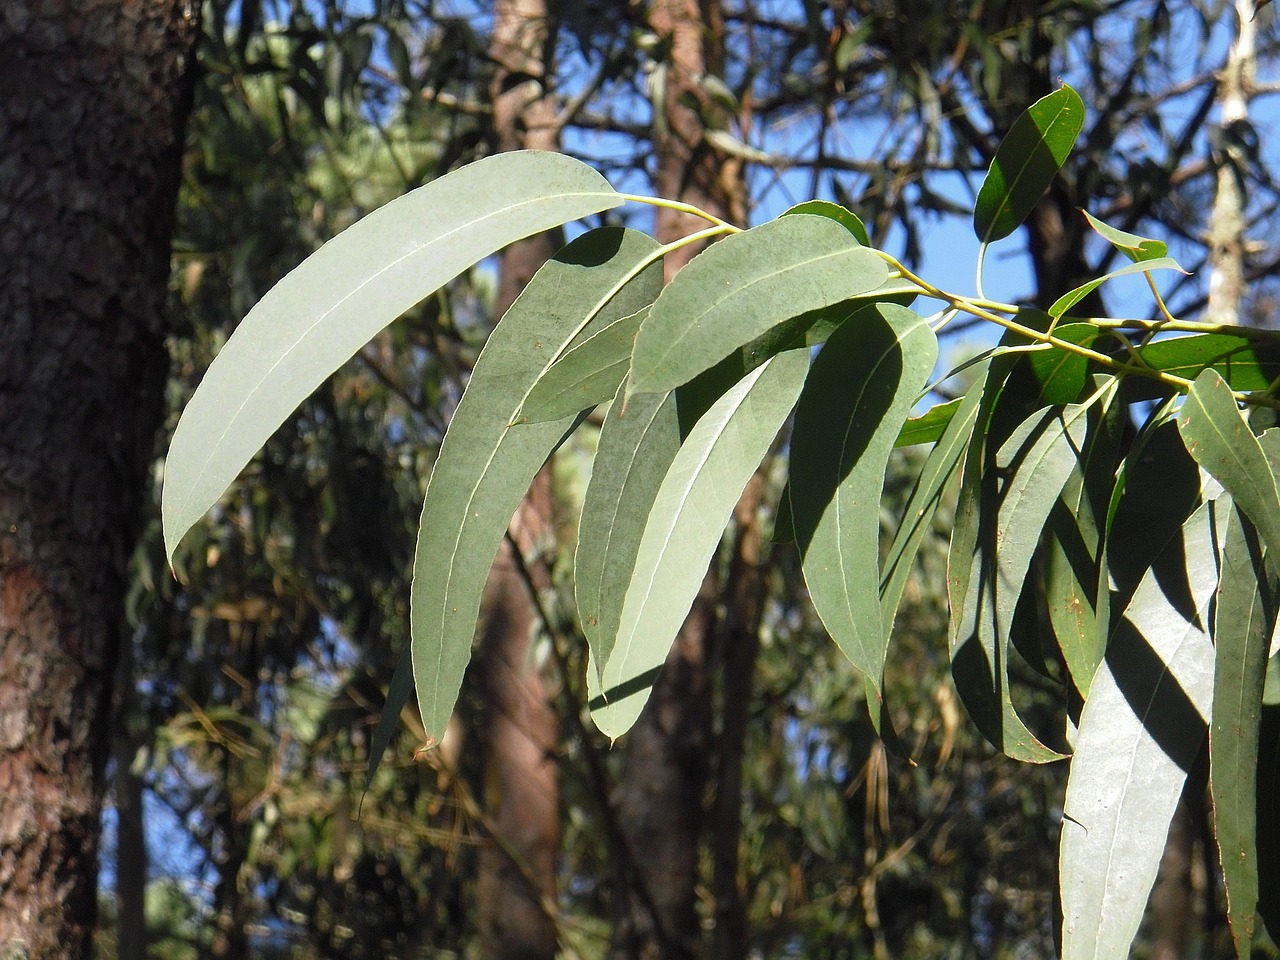 Huile essentielle d’Eucalyptus radié